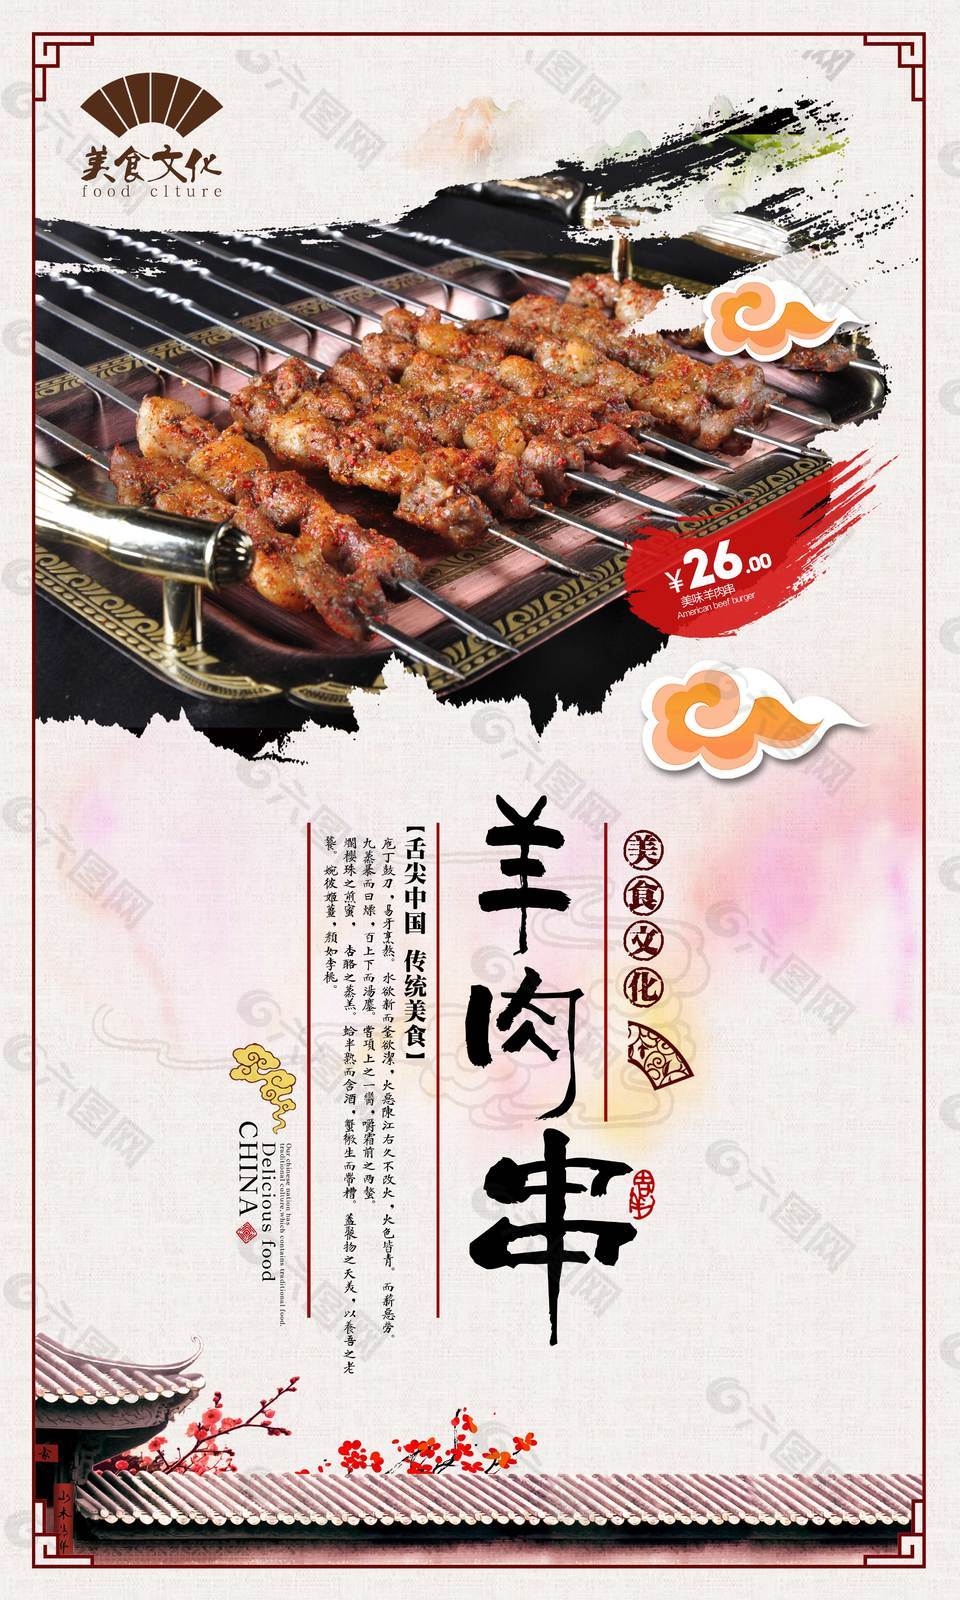 特色羊肉串美食海报平面广告素材免费下载(图片编号:7708747)